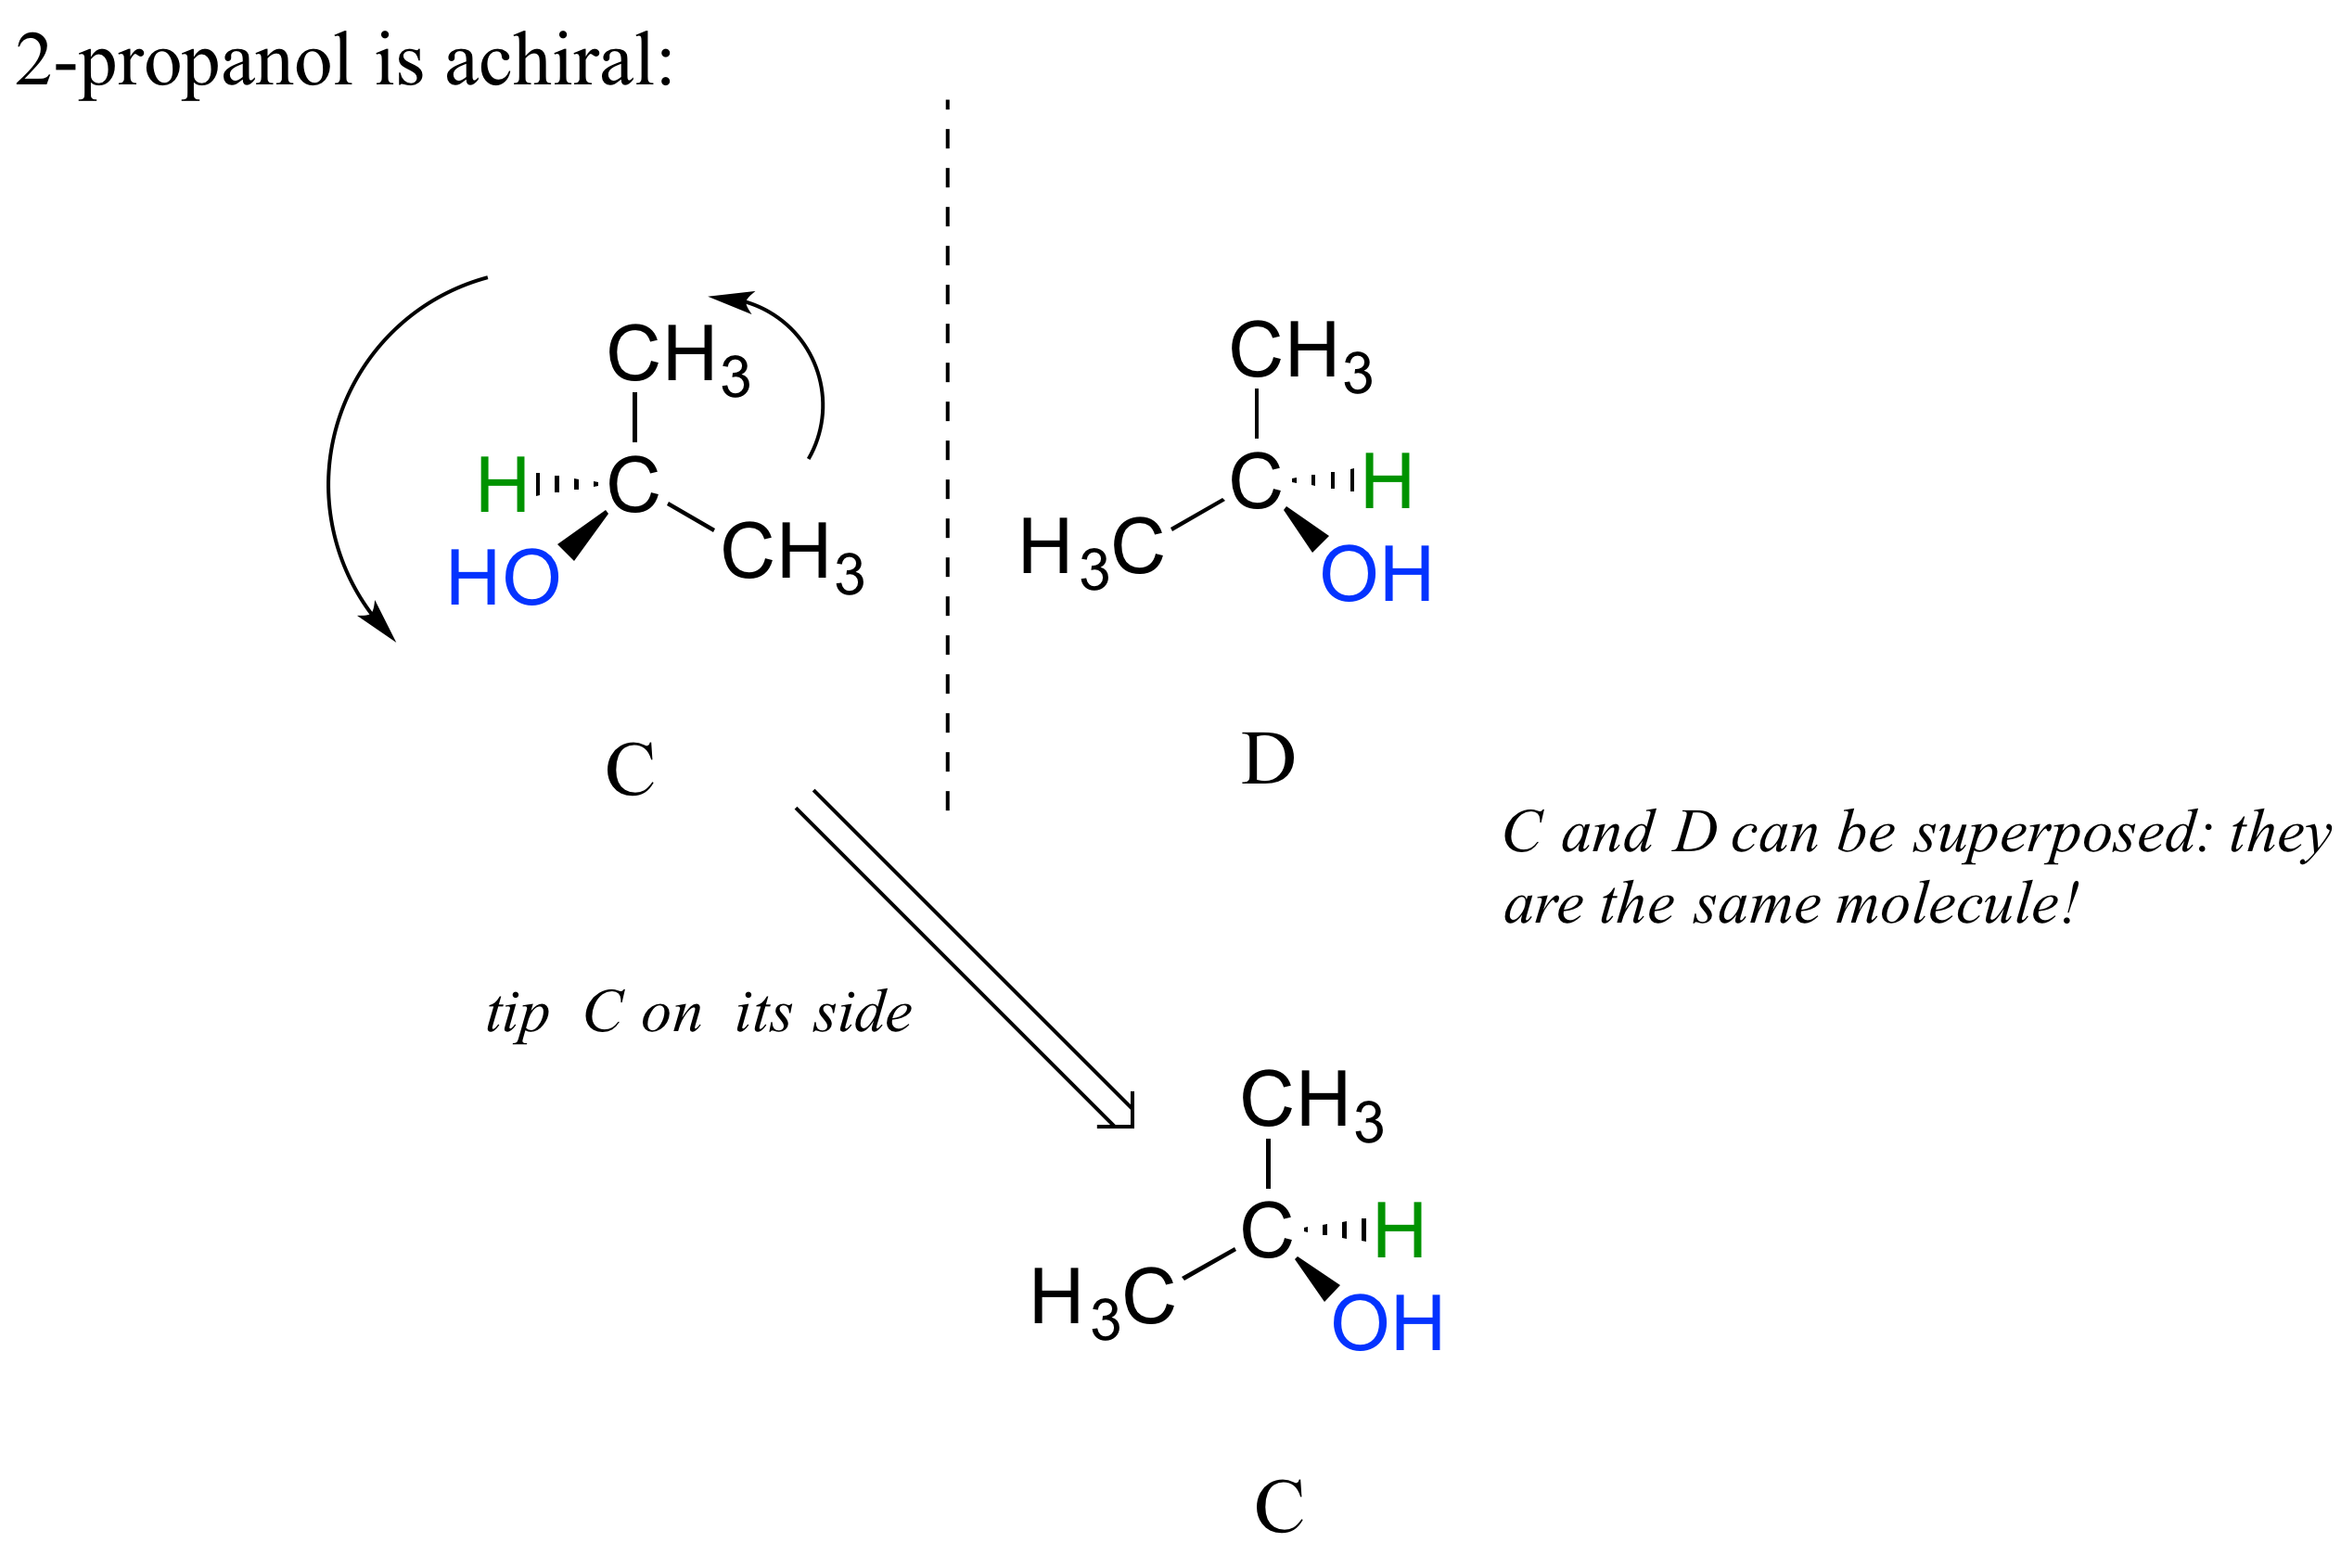 2-propanol (molécula C) y su imagen especular (molécula D). Punta C en su costado. C y D pueden superponerse: son la misma molécula. El 2-propanol es aquiral.